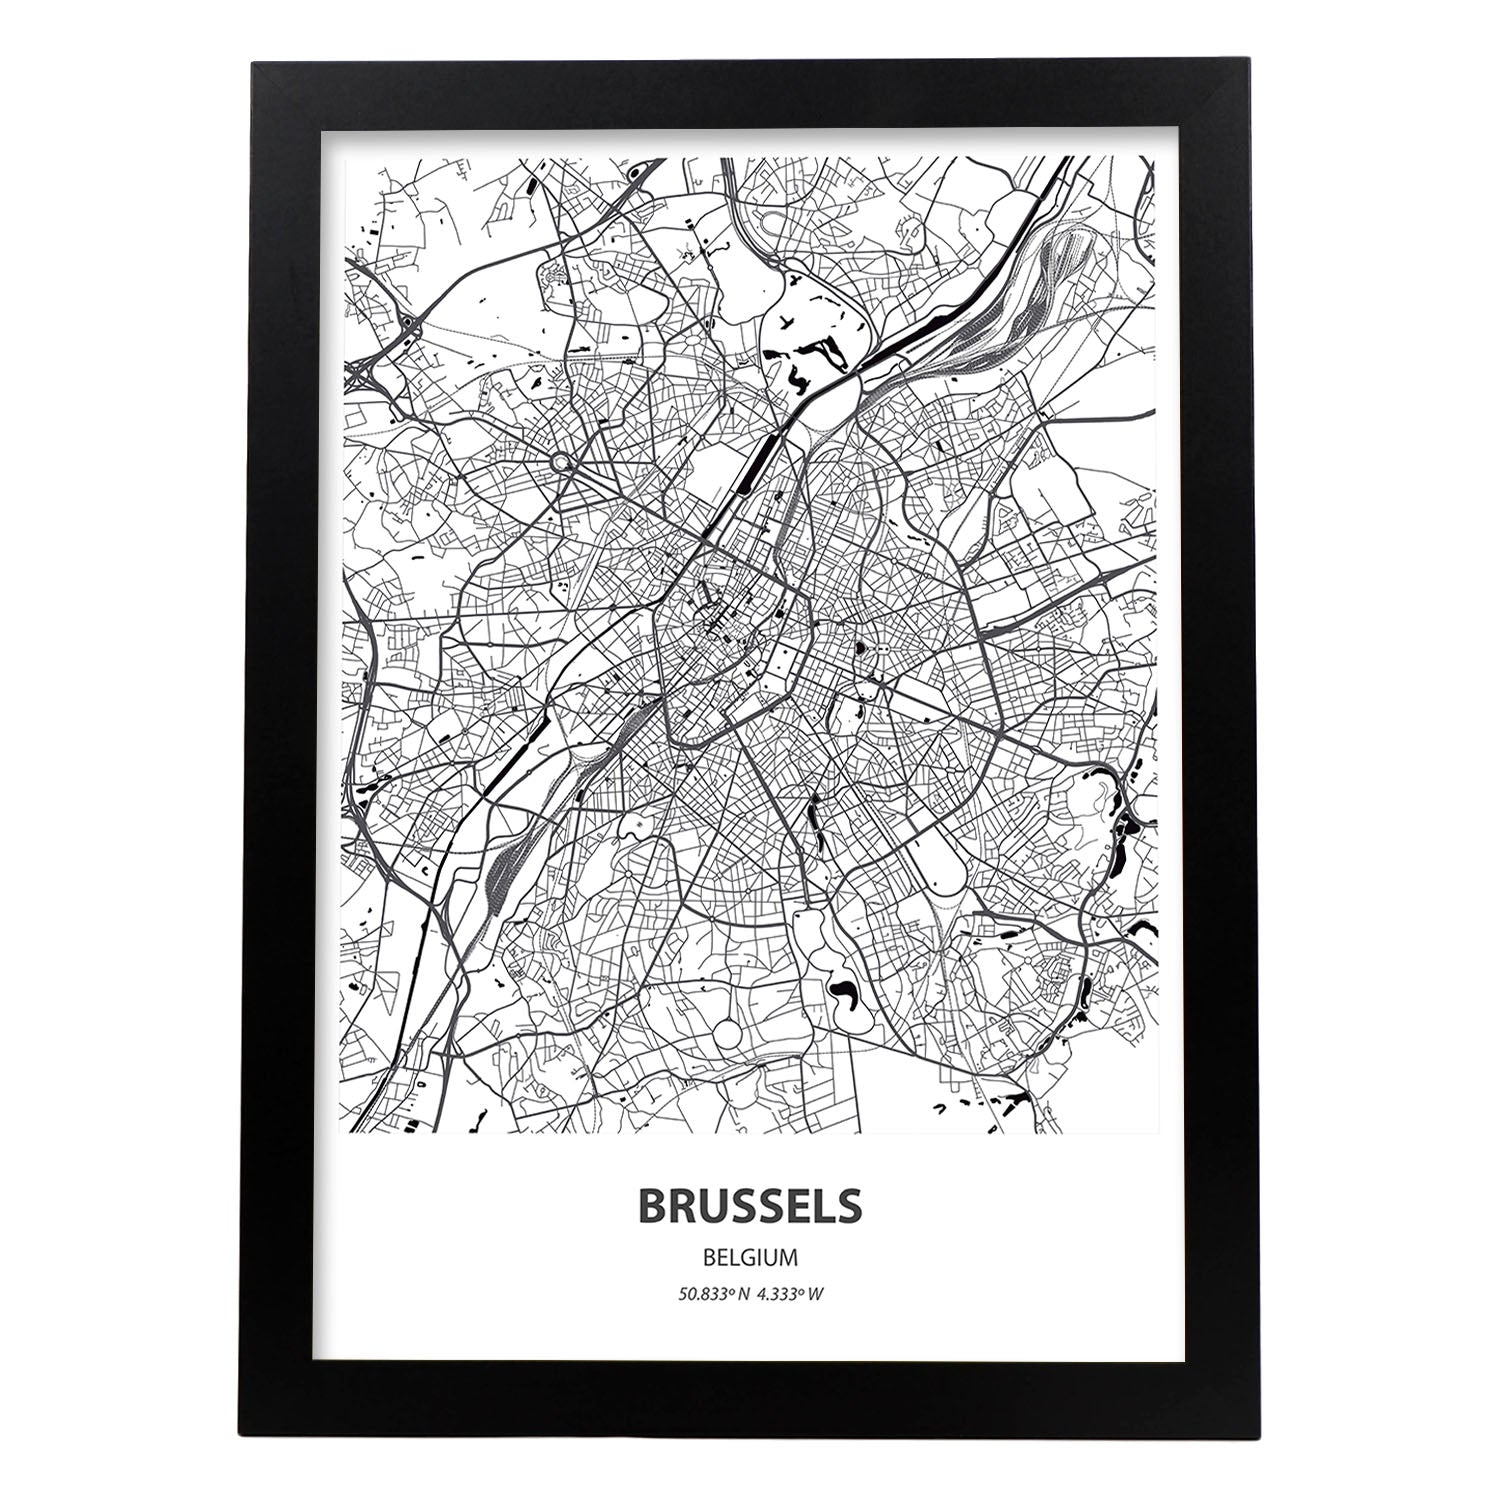 Poster con mapa de Brussels - Belgica. Láminas de ciudades de Holanda y Bélgica con mares y ríos en color negro.-Artwork-Nacnic-A4-Marco Negro-Nacnic Estudio SL